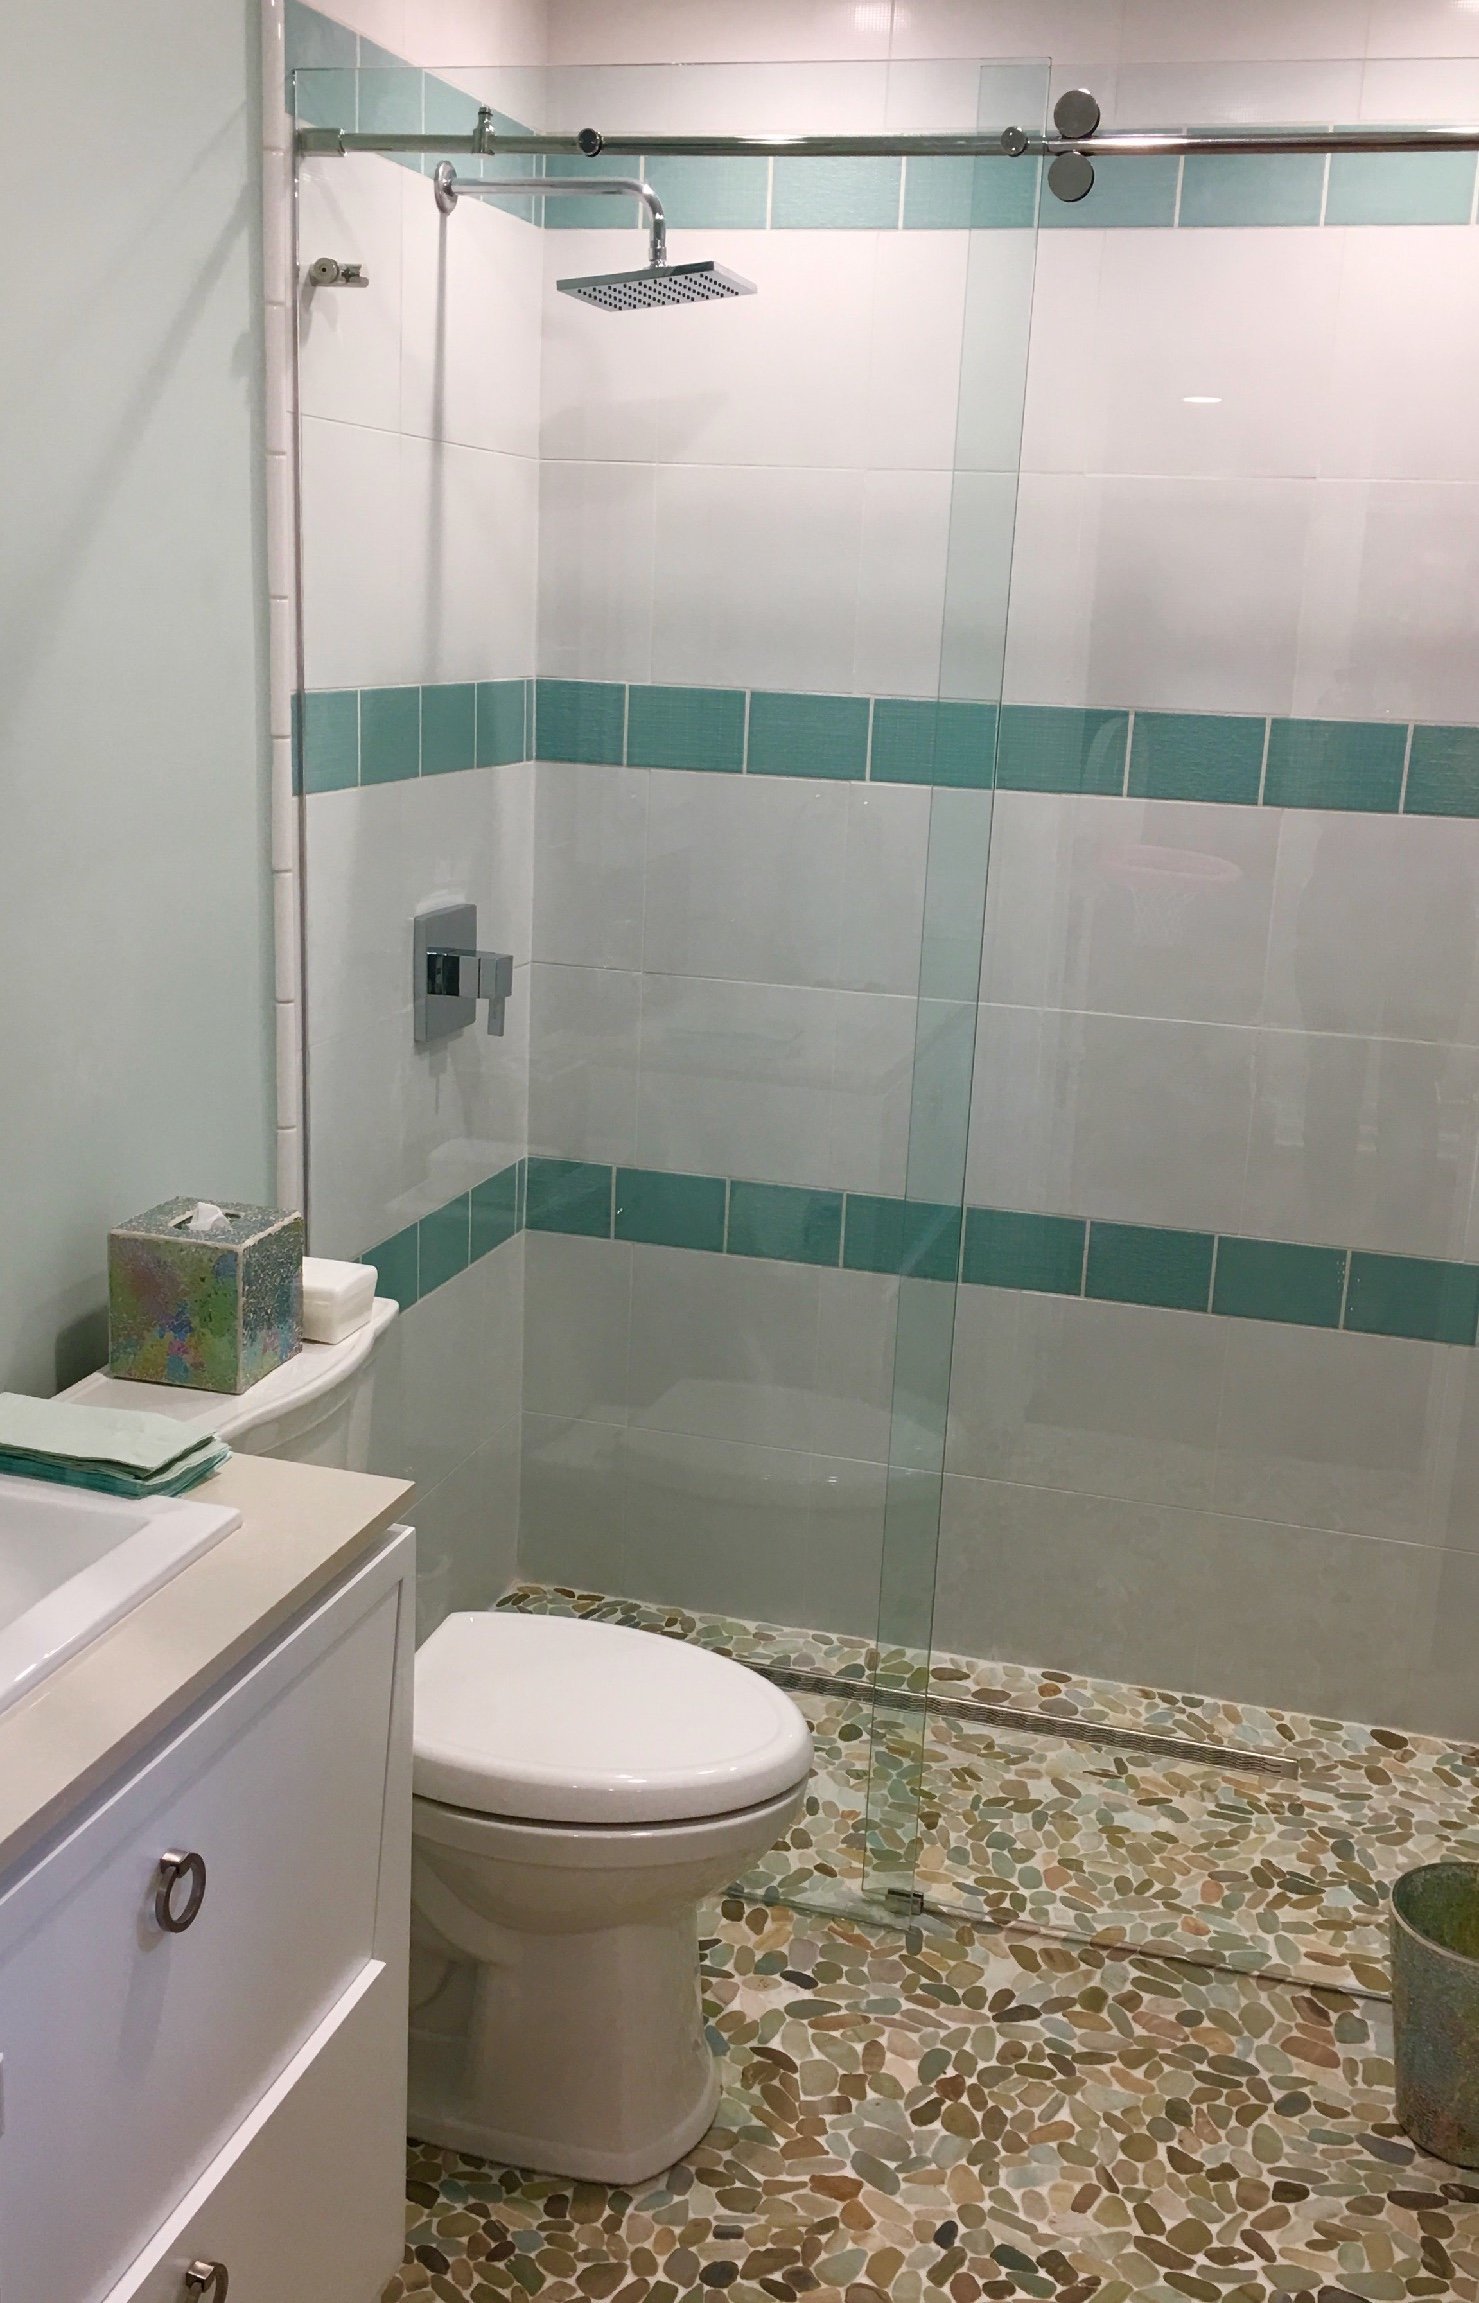 Aqua and white bathroom design